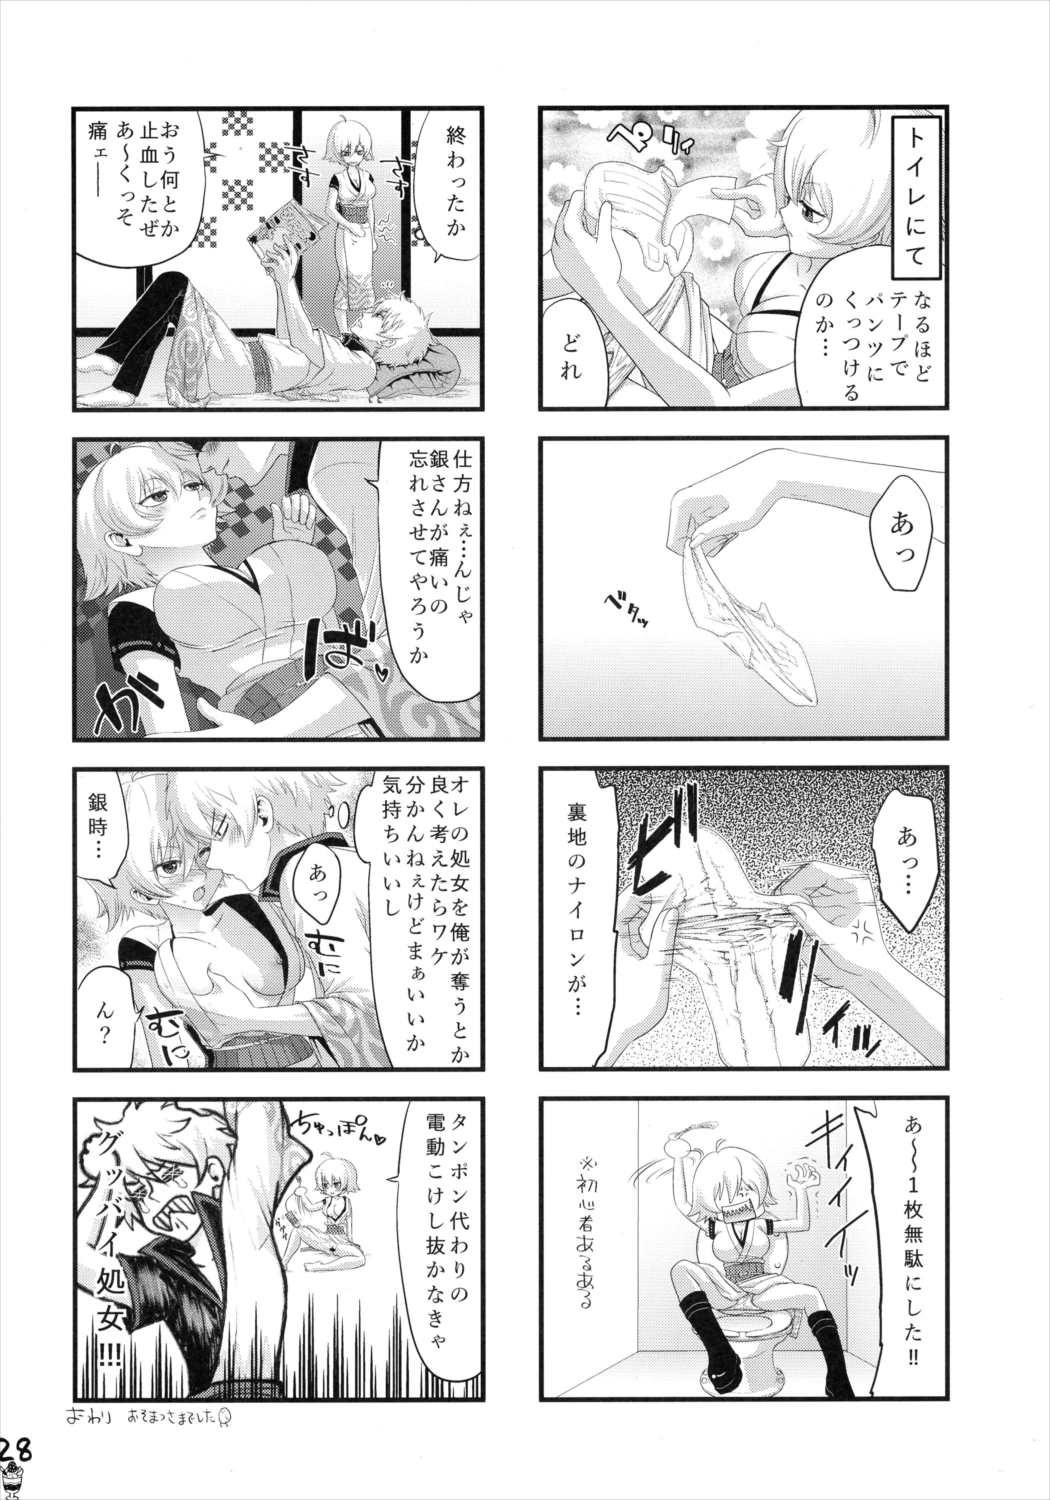 【銀魂】銀時×銀子のどすけべイチャラブ本♡の画像29枚目